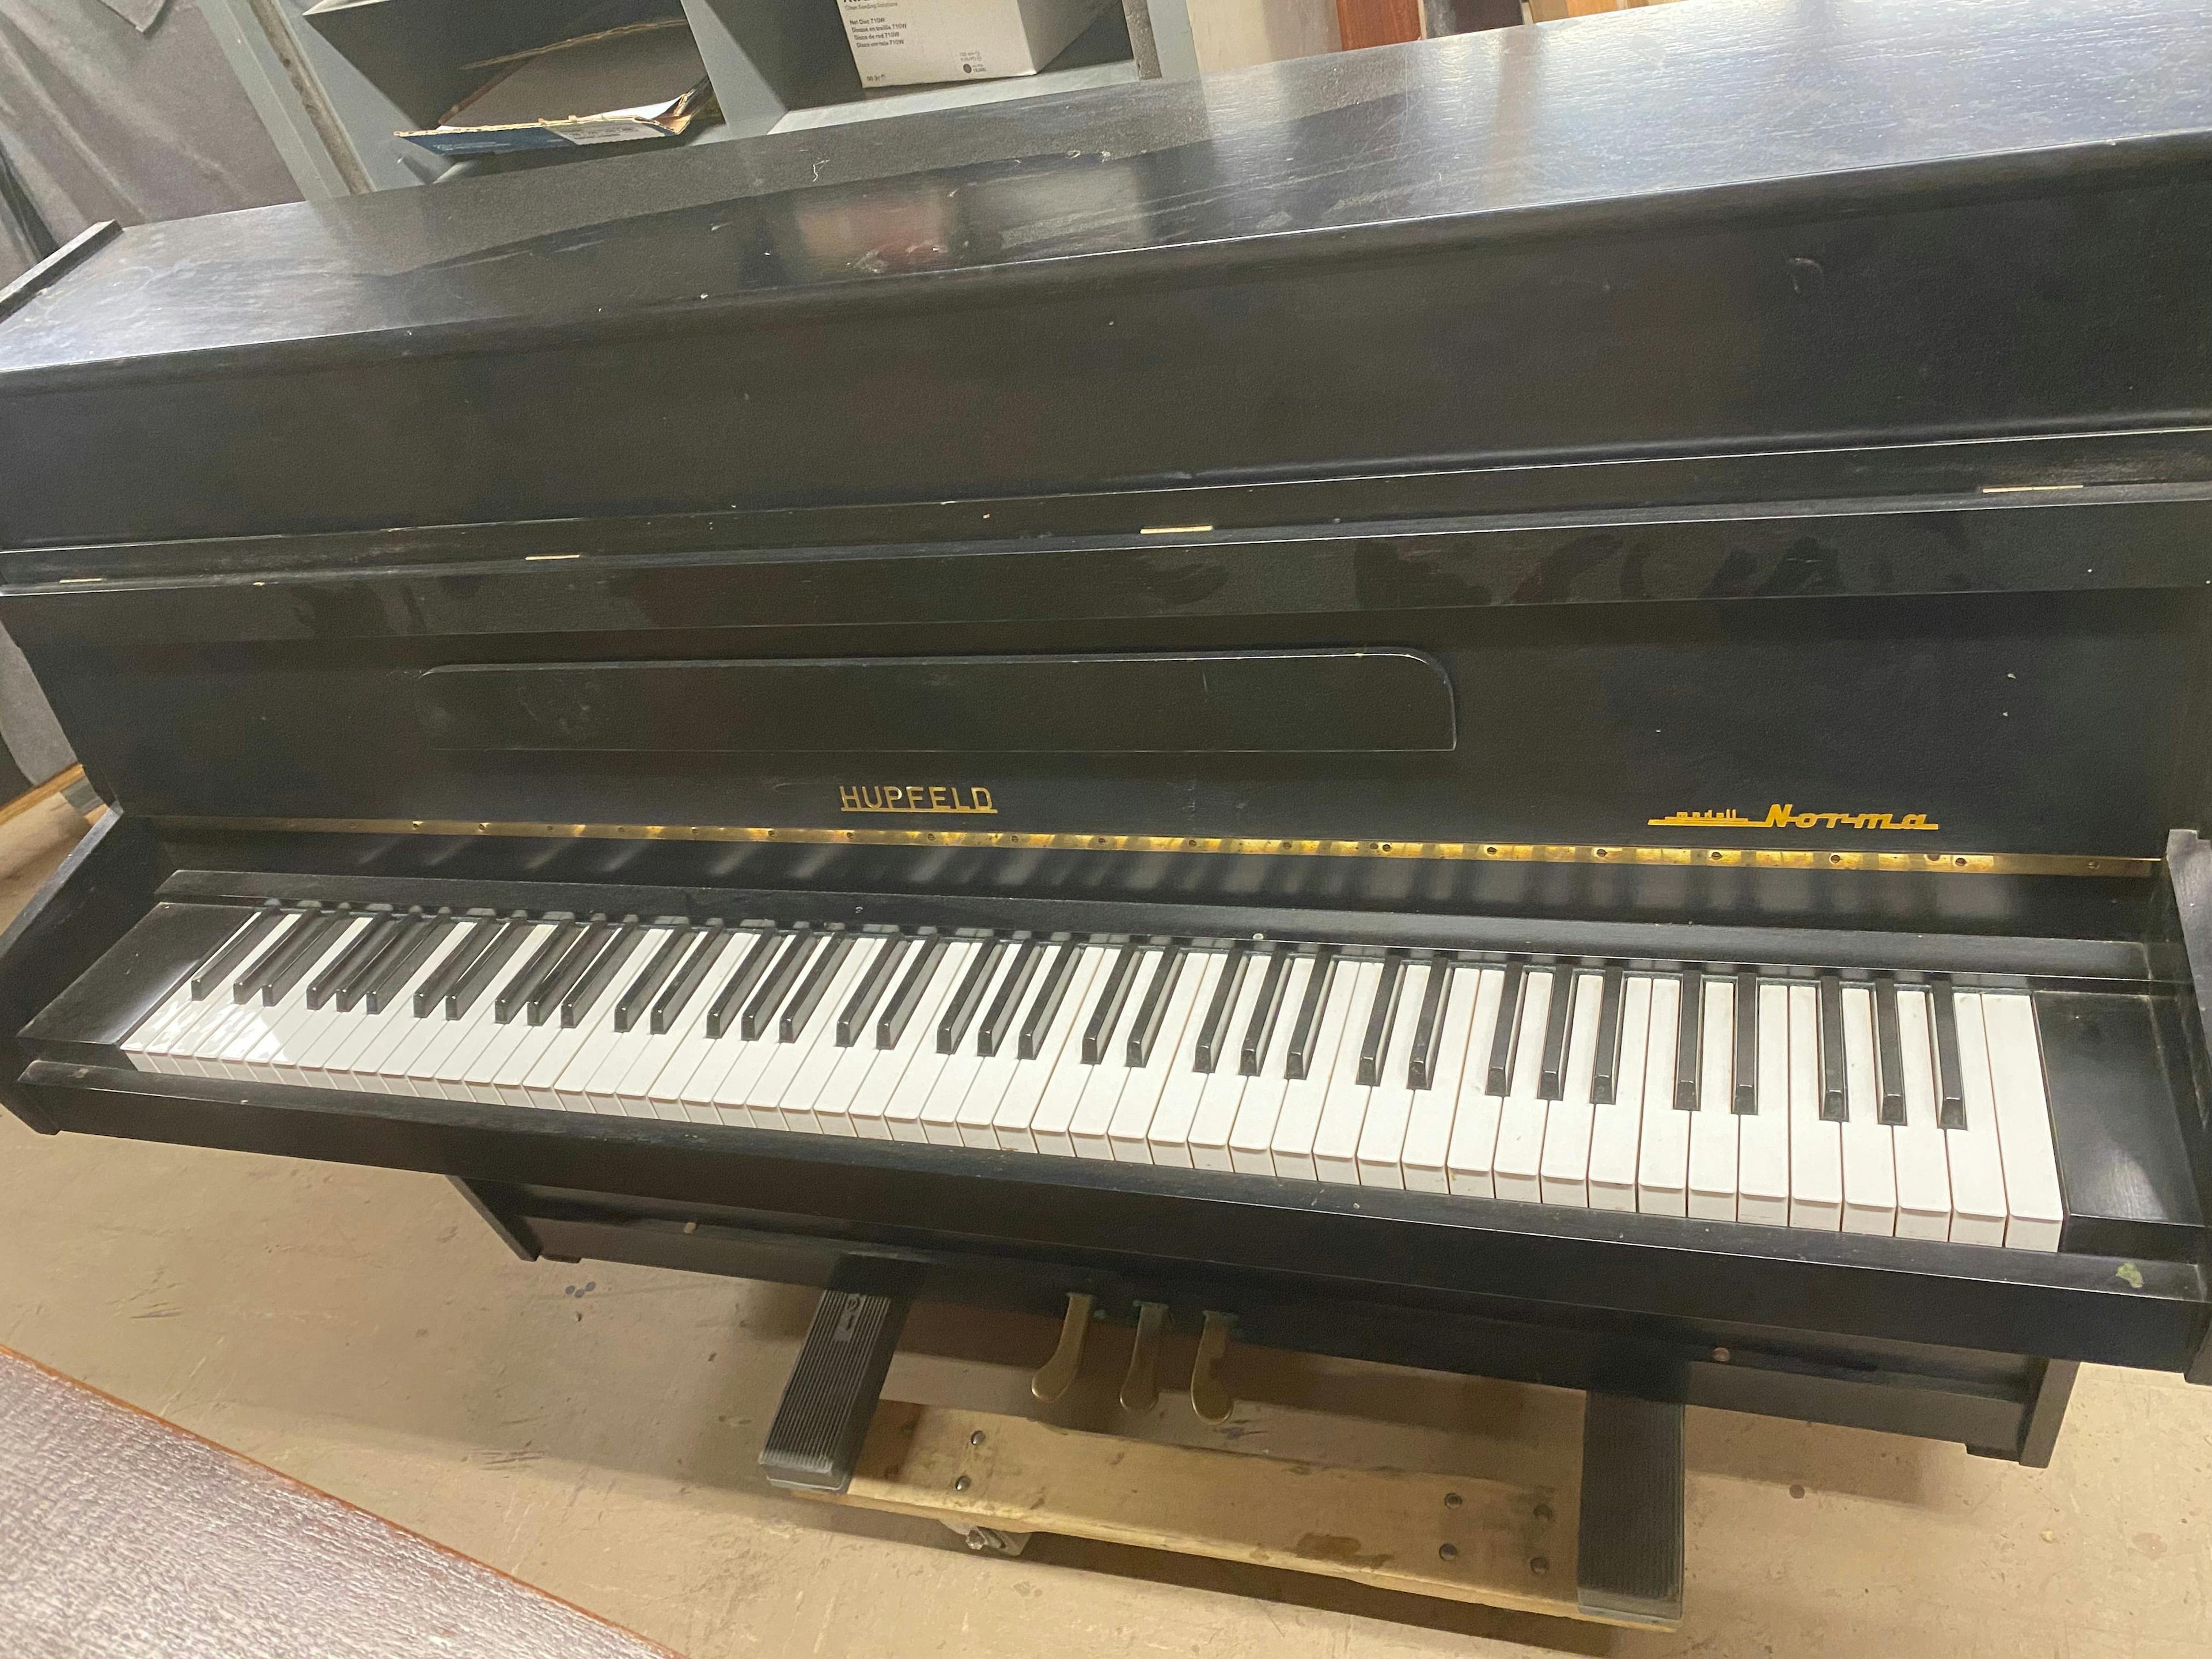 Hupfeld Console Piano